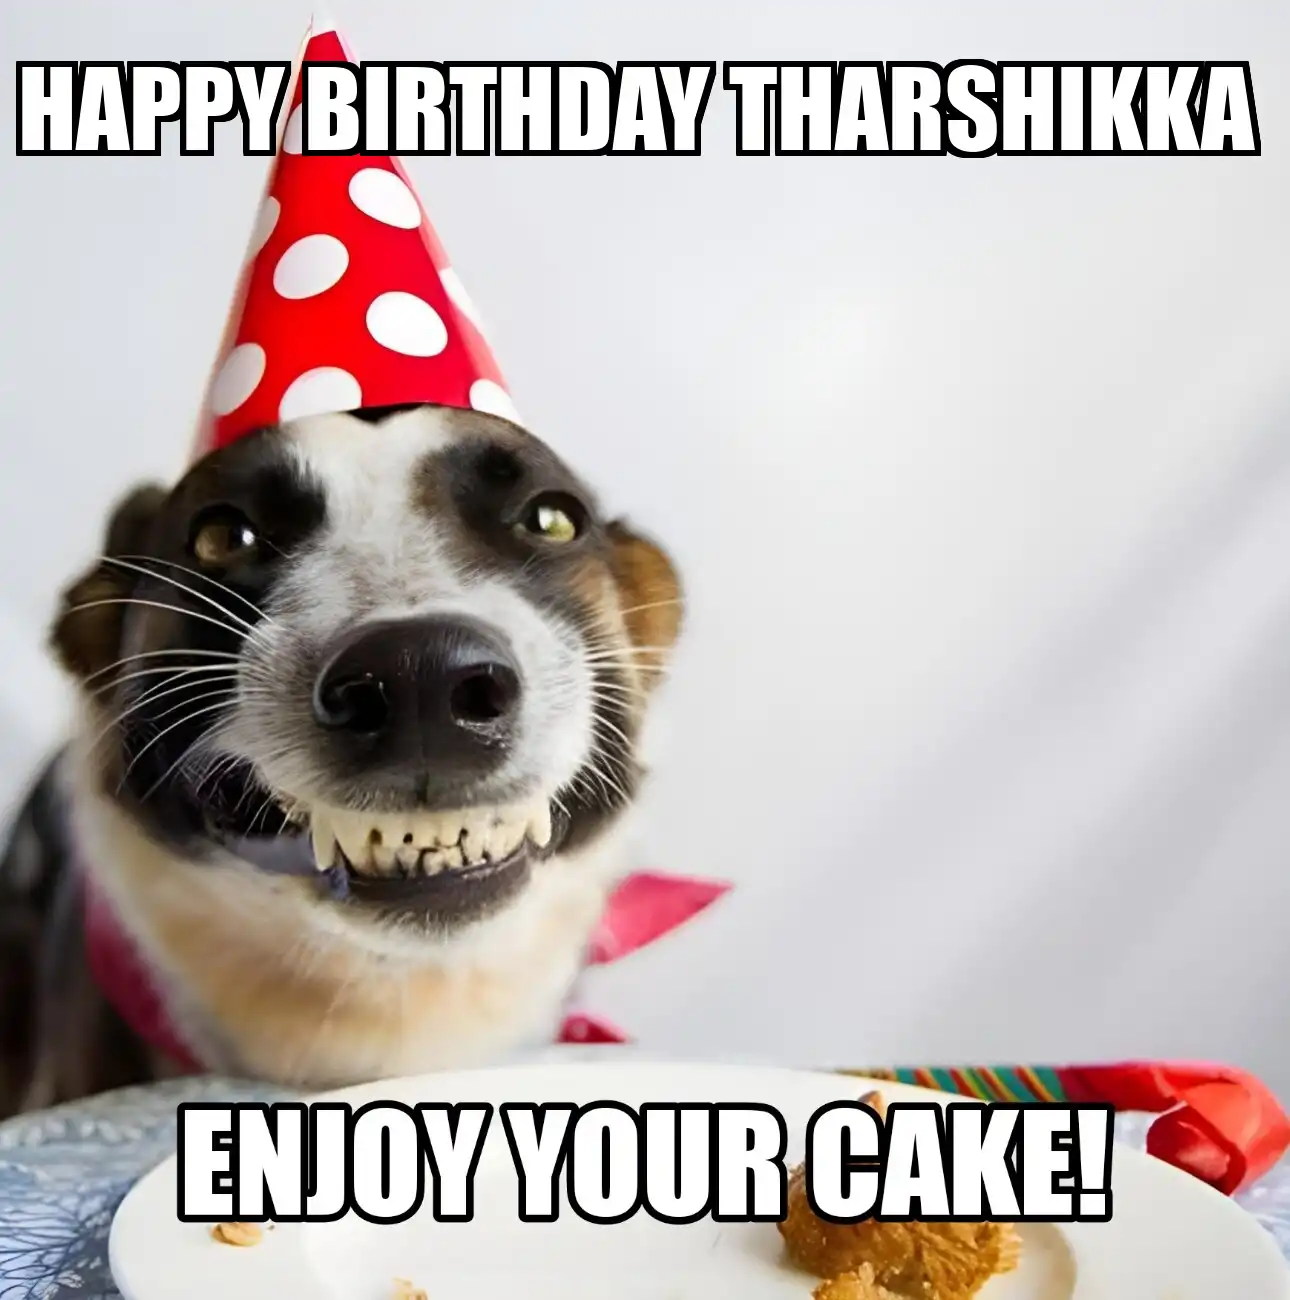 Happy Birthday Tharshikka Enjoy Your Cake Dog Meme